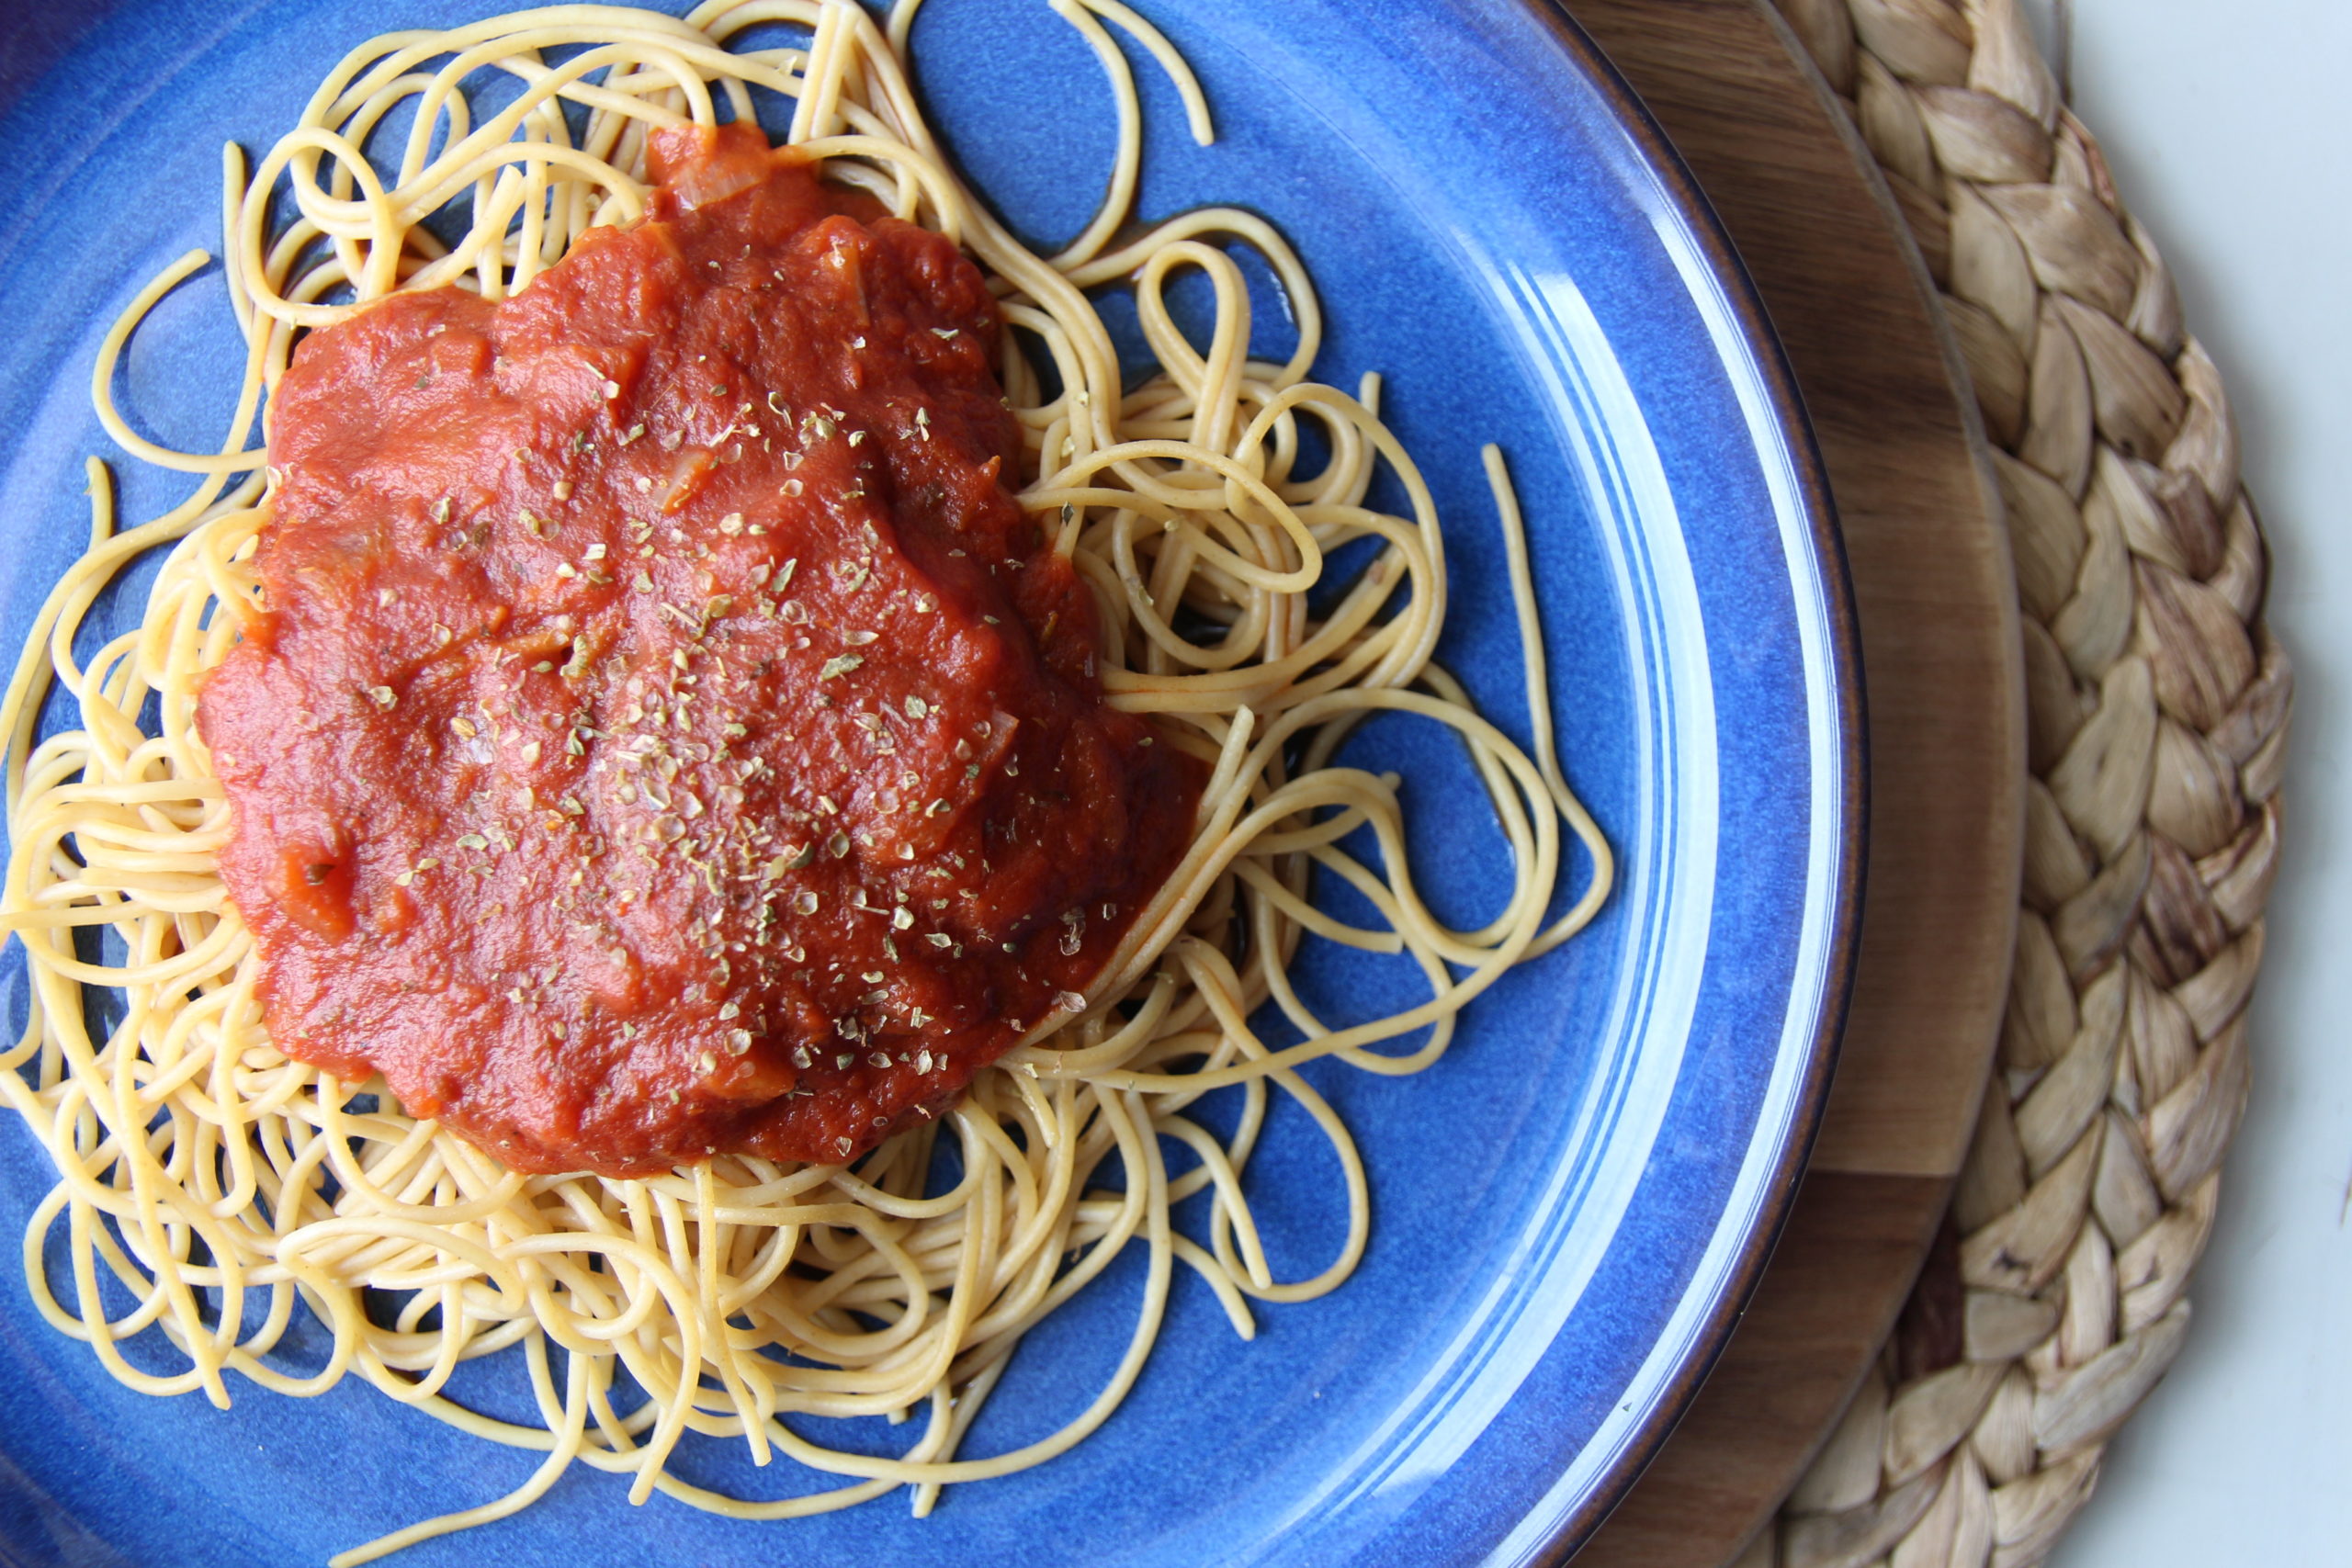 Tomato sauce for pasta, pizza, lasagna